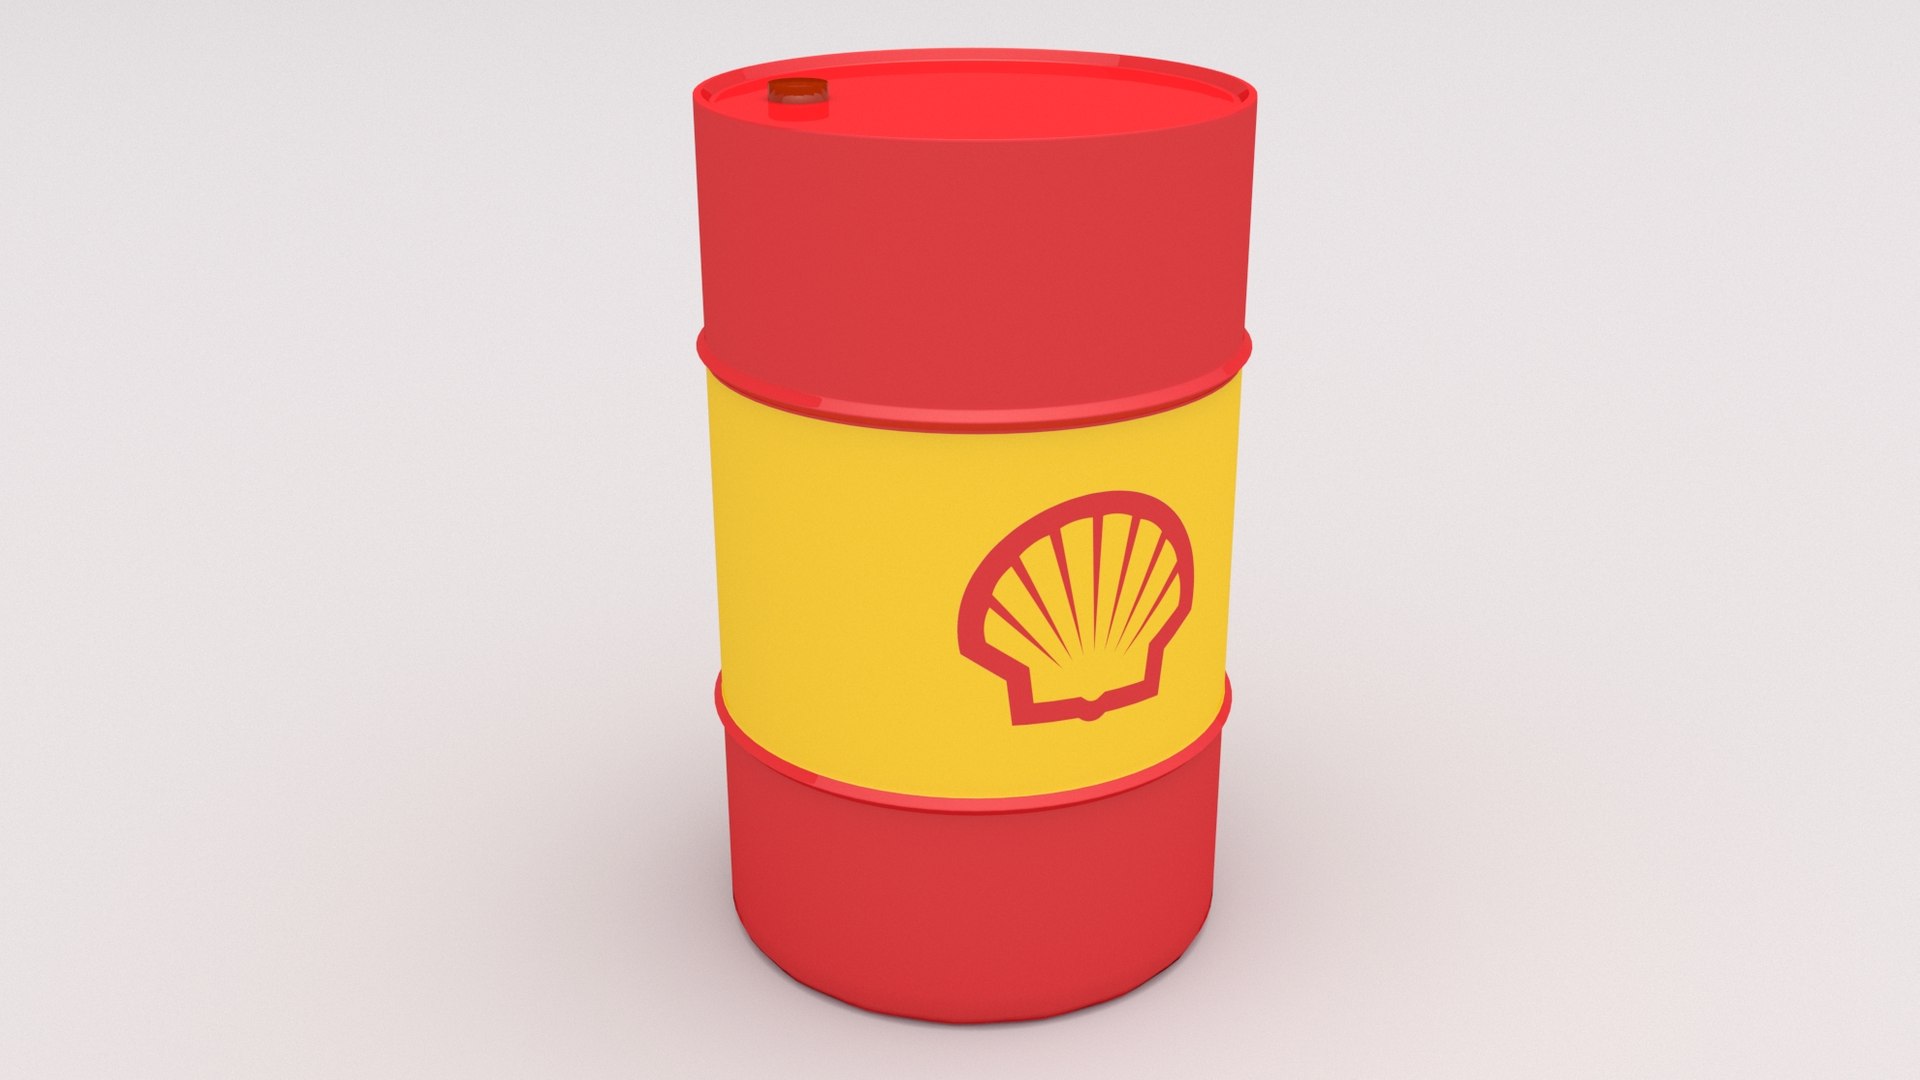 Shell barrel 3D model - TurboSquid 1566750